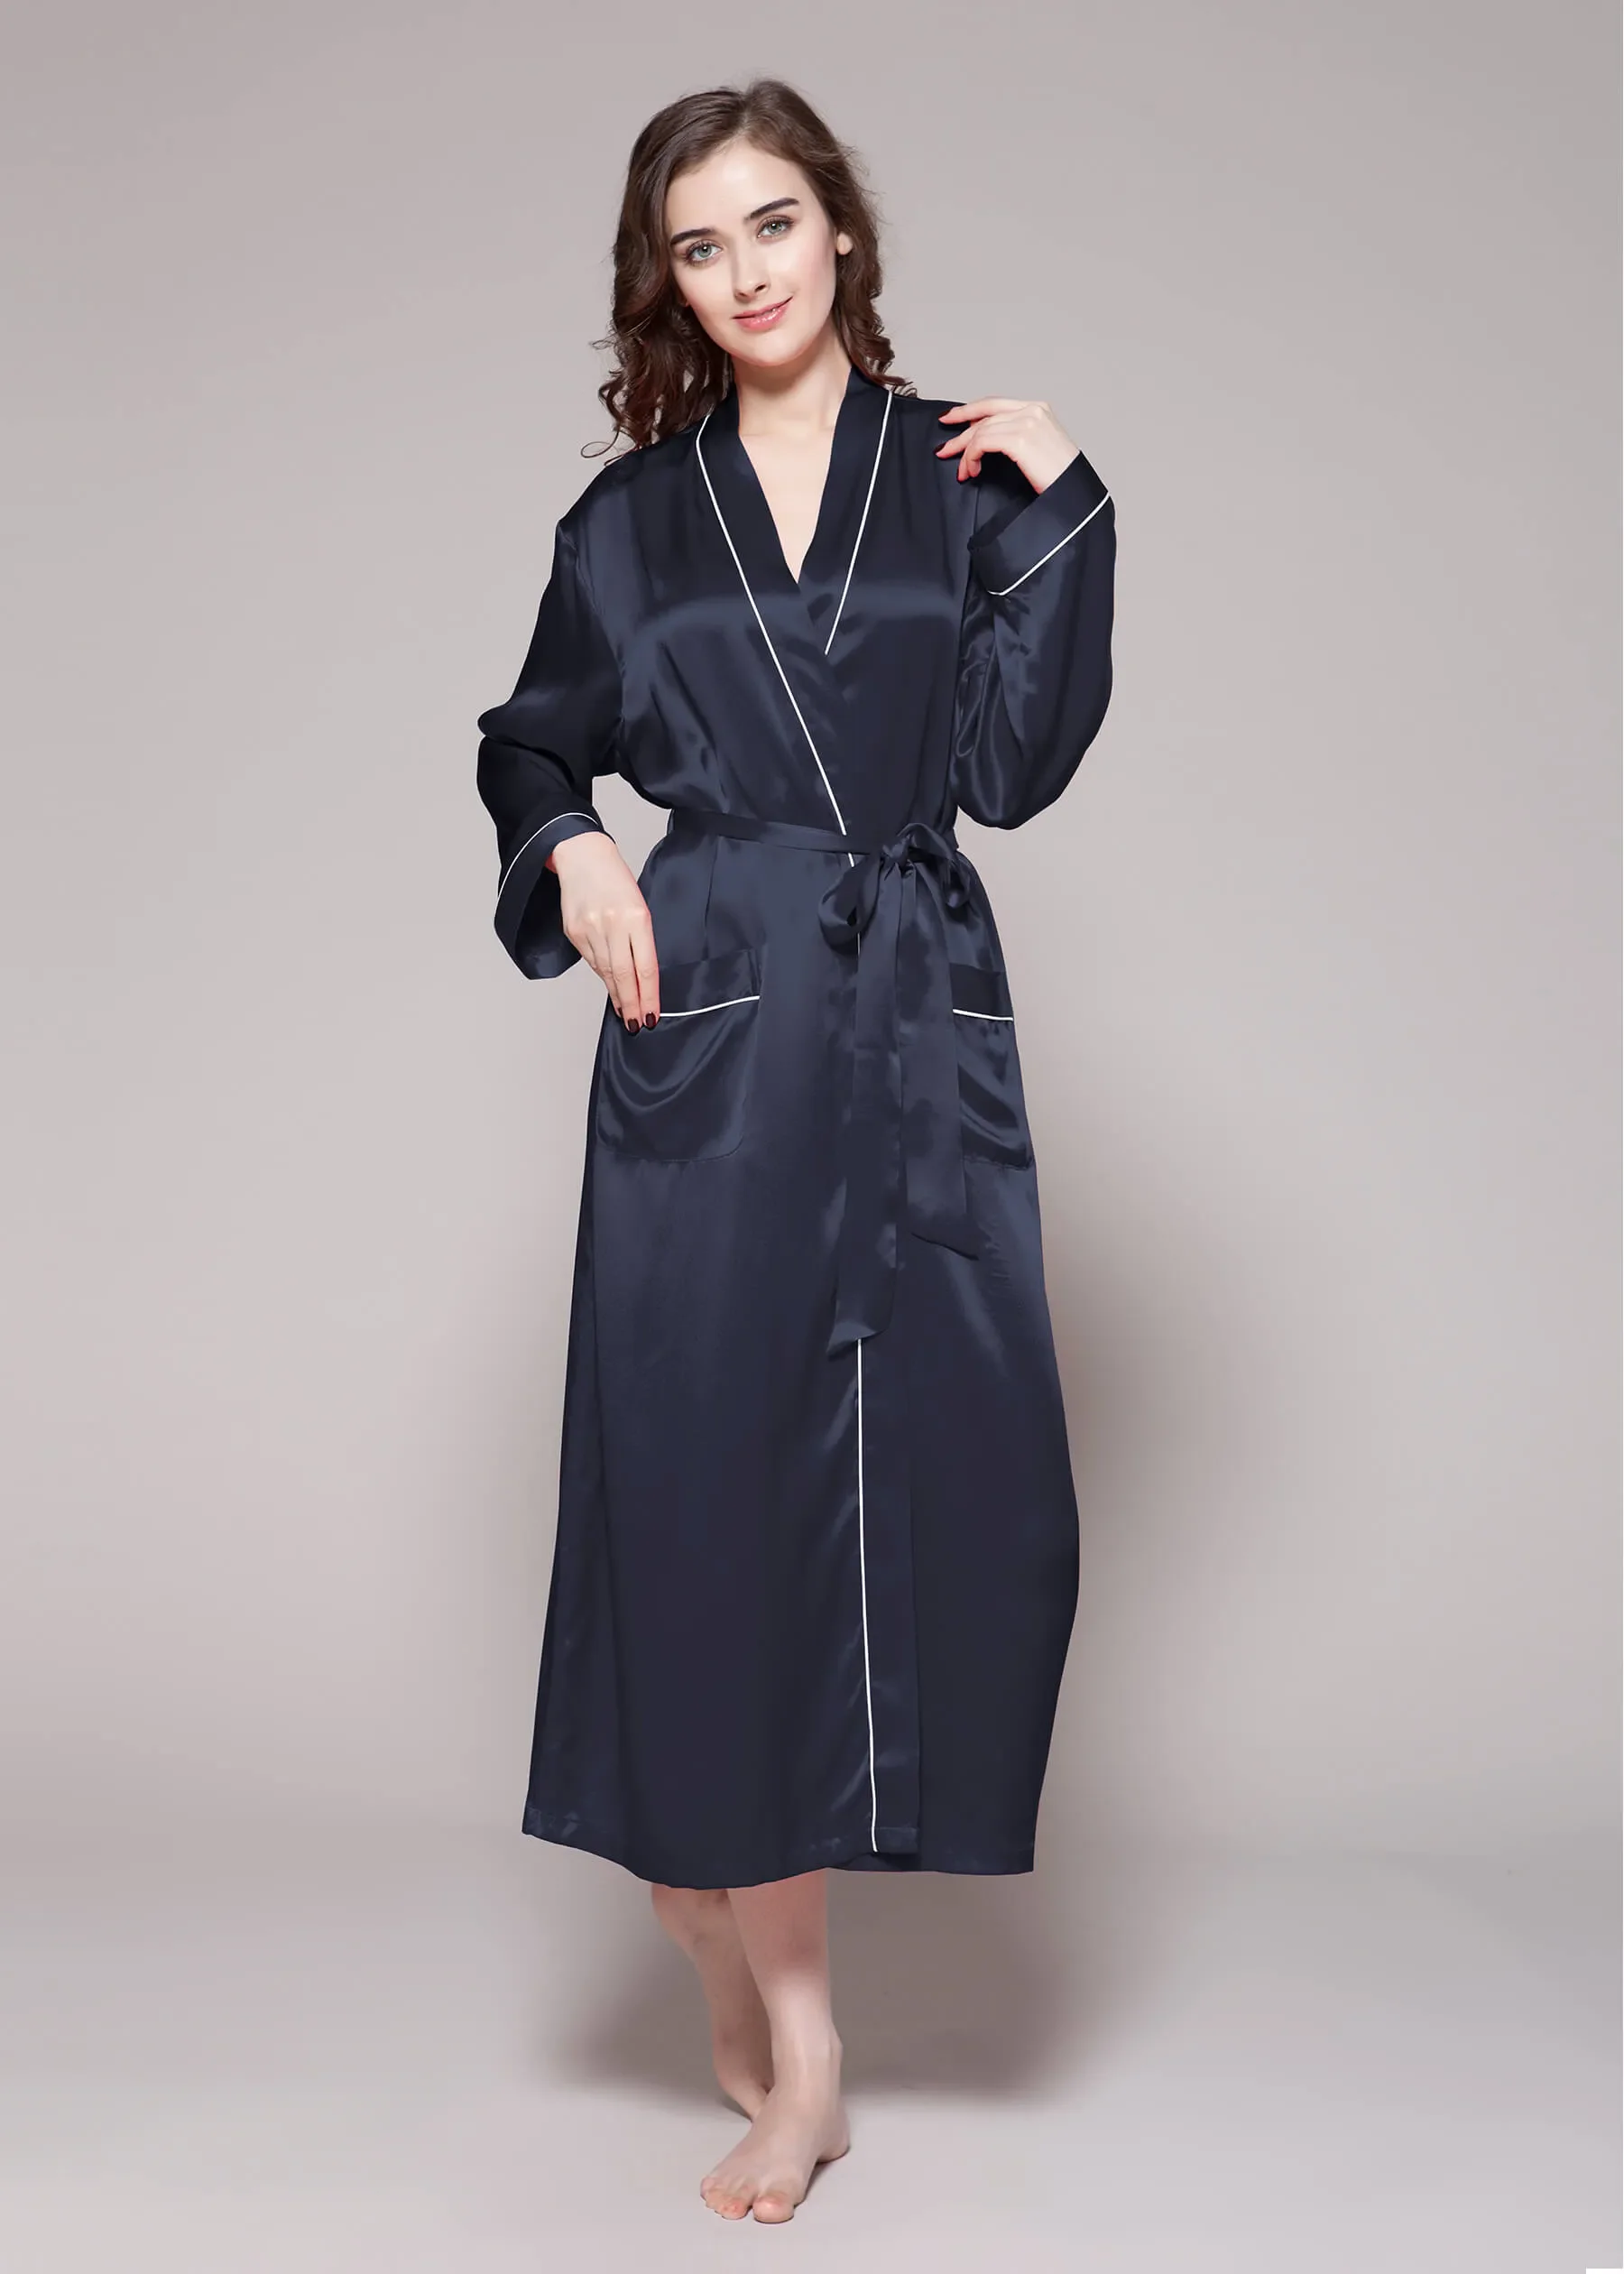 100% silk pyjamas womens printed casual dresses floral nightwear girls 3 sets ice silk pajamas